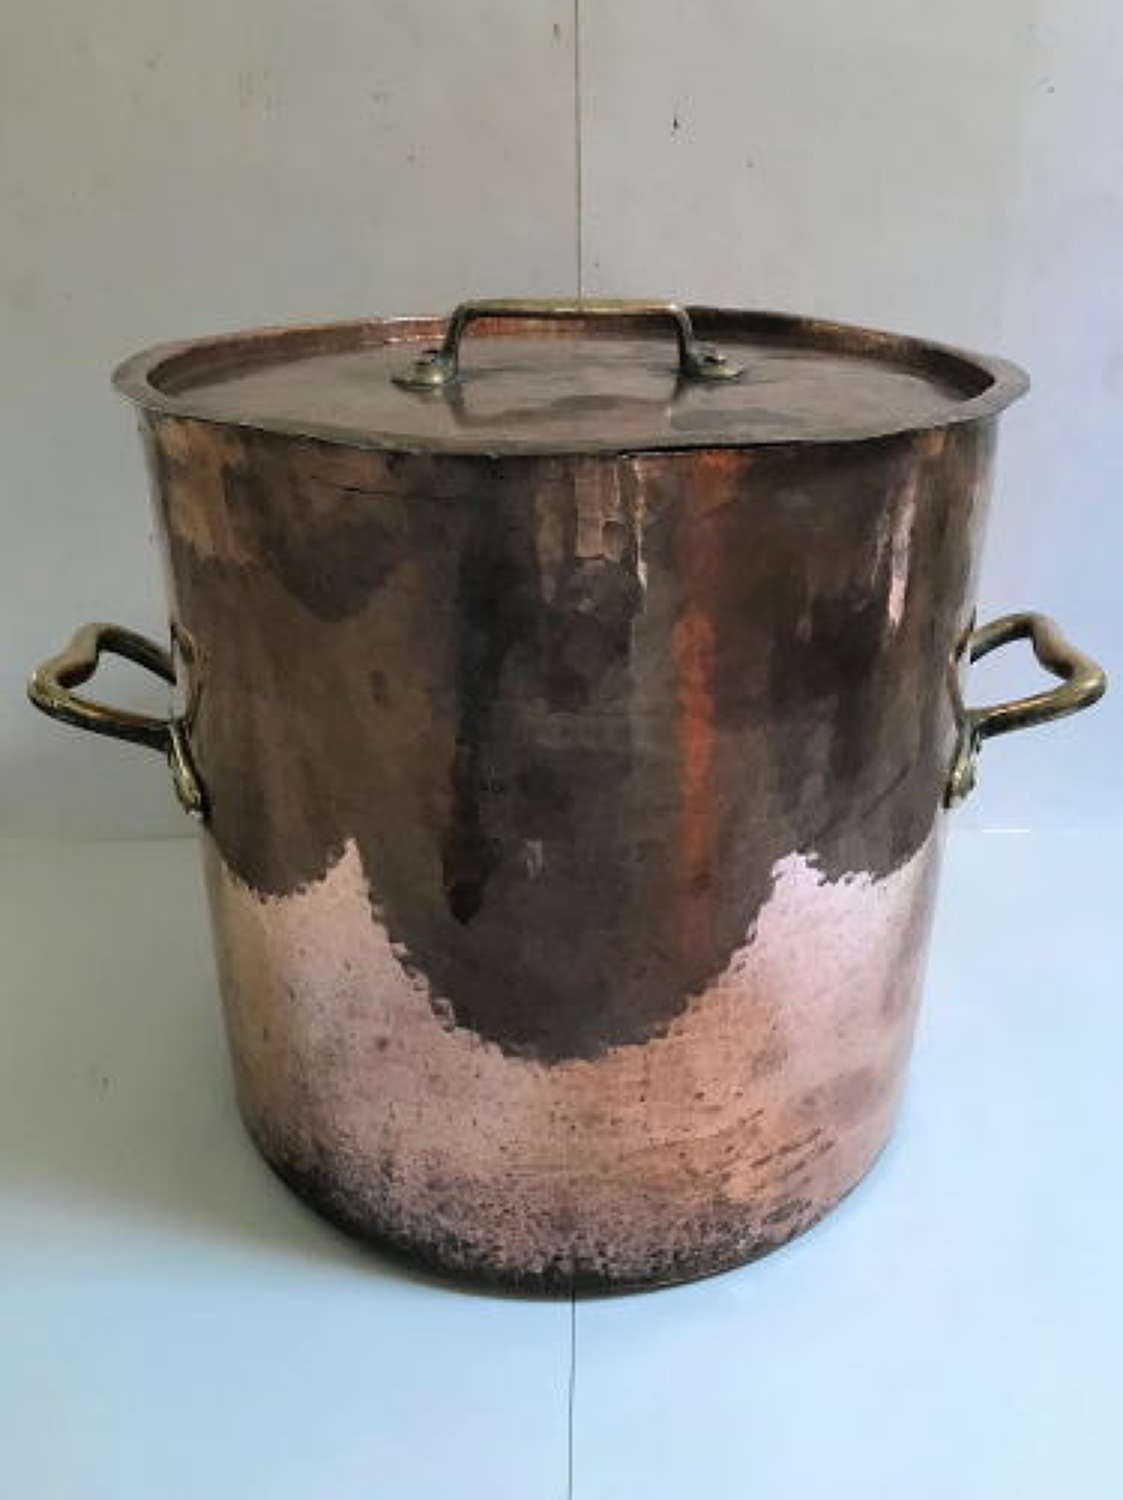 Superb Original Large Copper Bowl Ideal Log Basket with Top